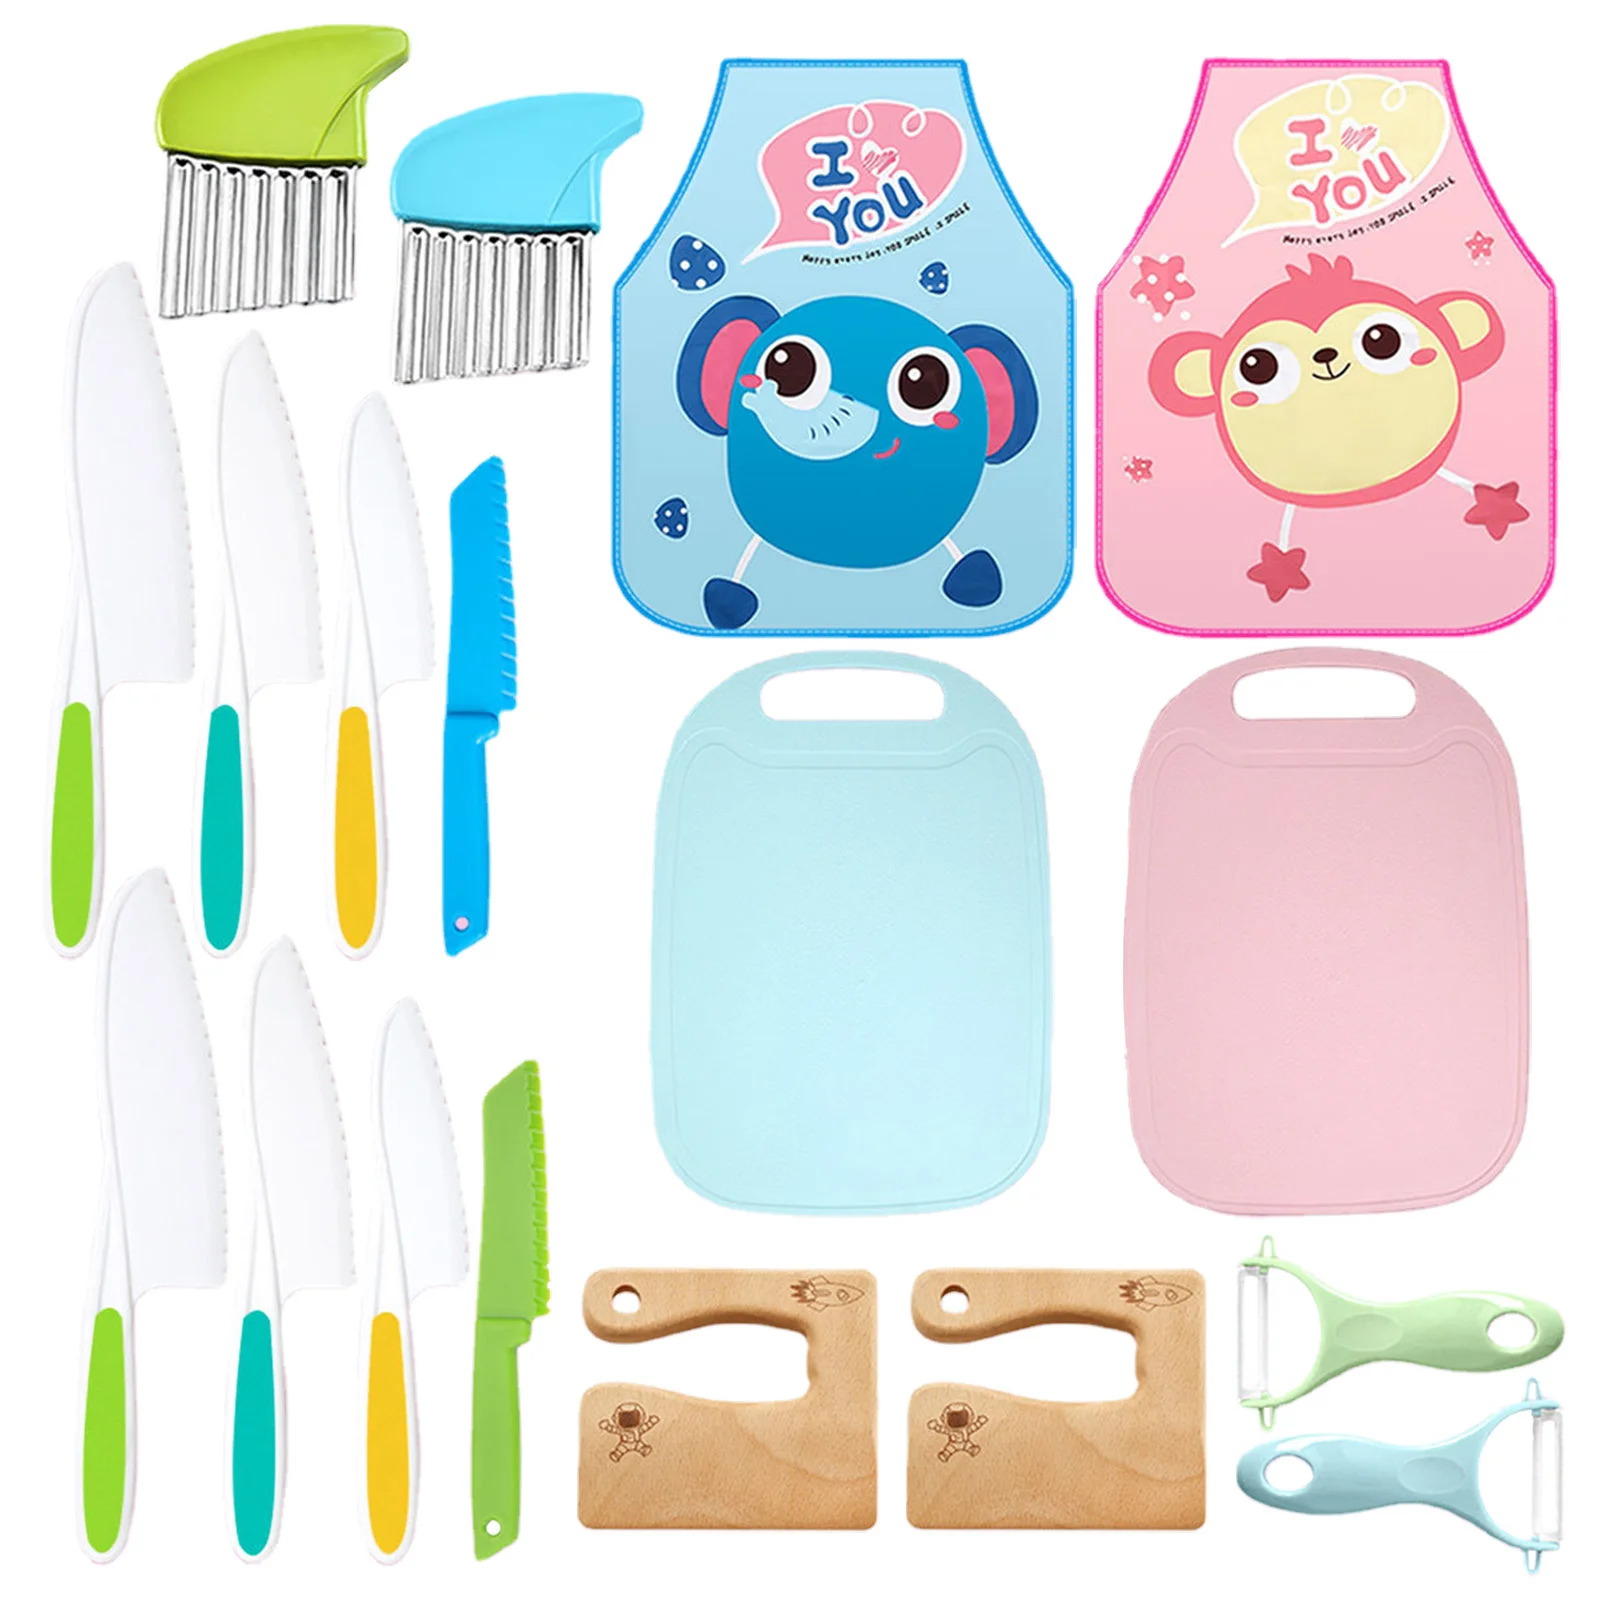 

Набор детских кулинарных ножей из 9 предметов, два цвета на выбор, с разделочной доской и фартуком для игр родителей и детей